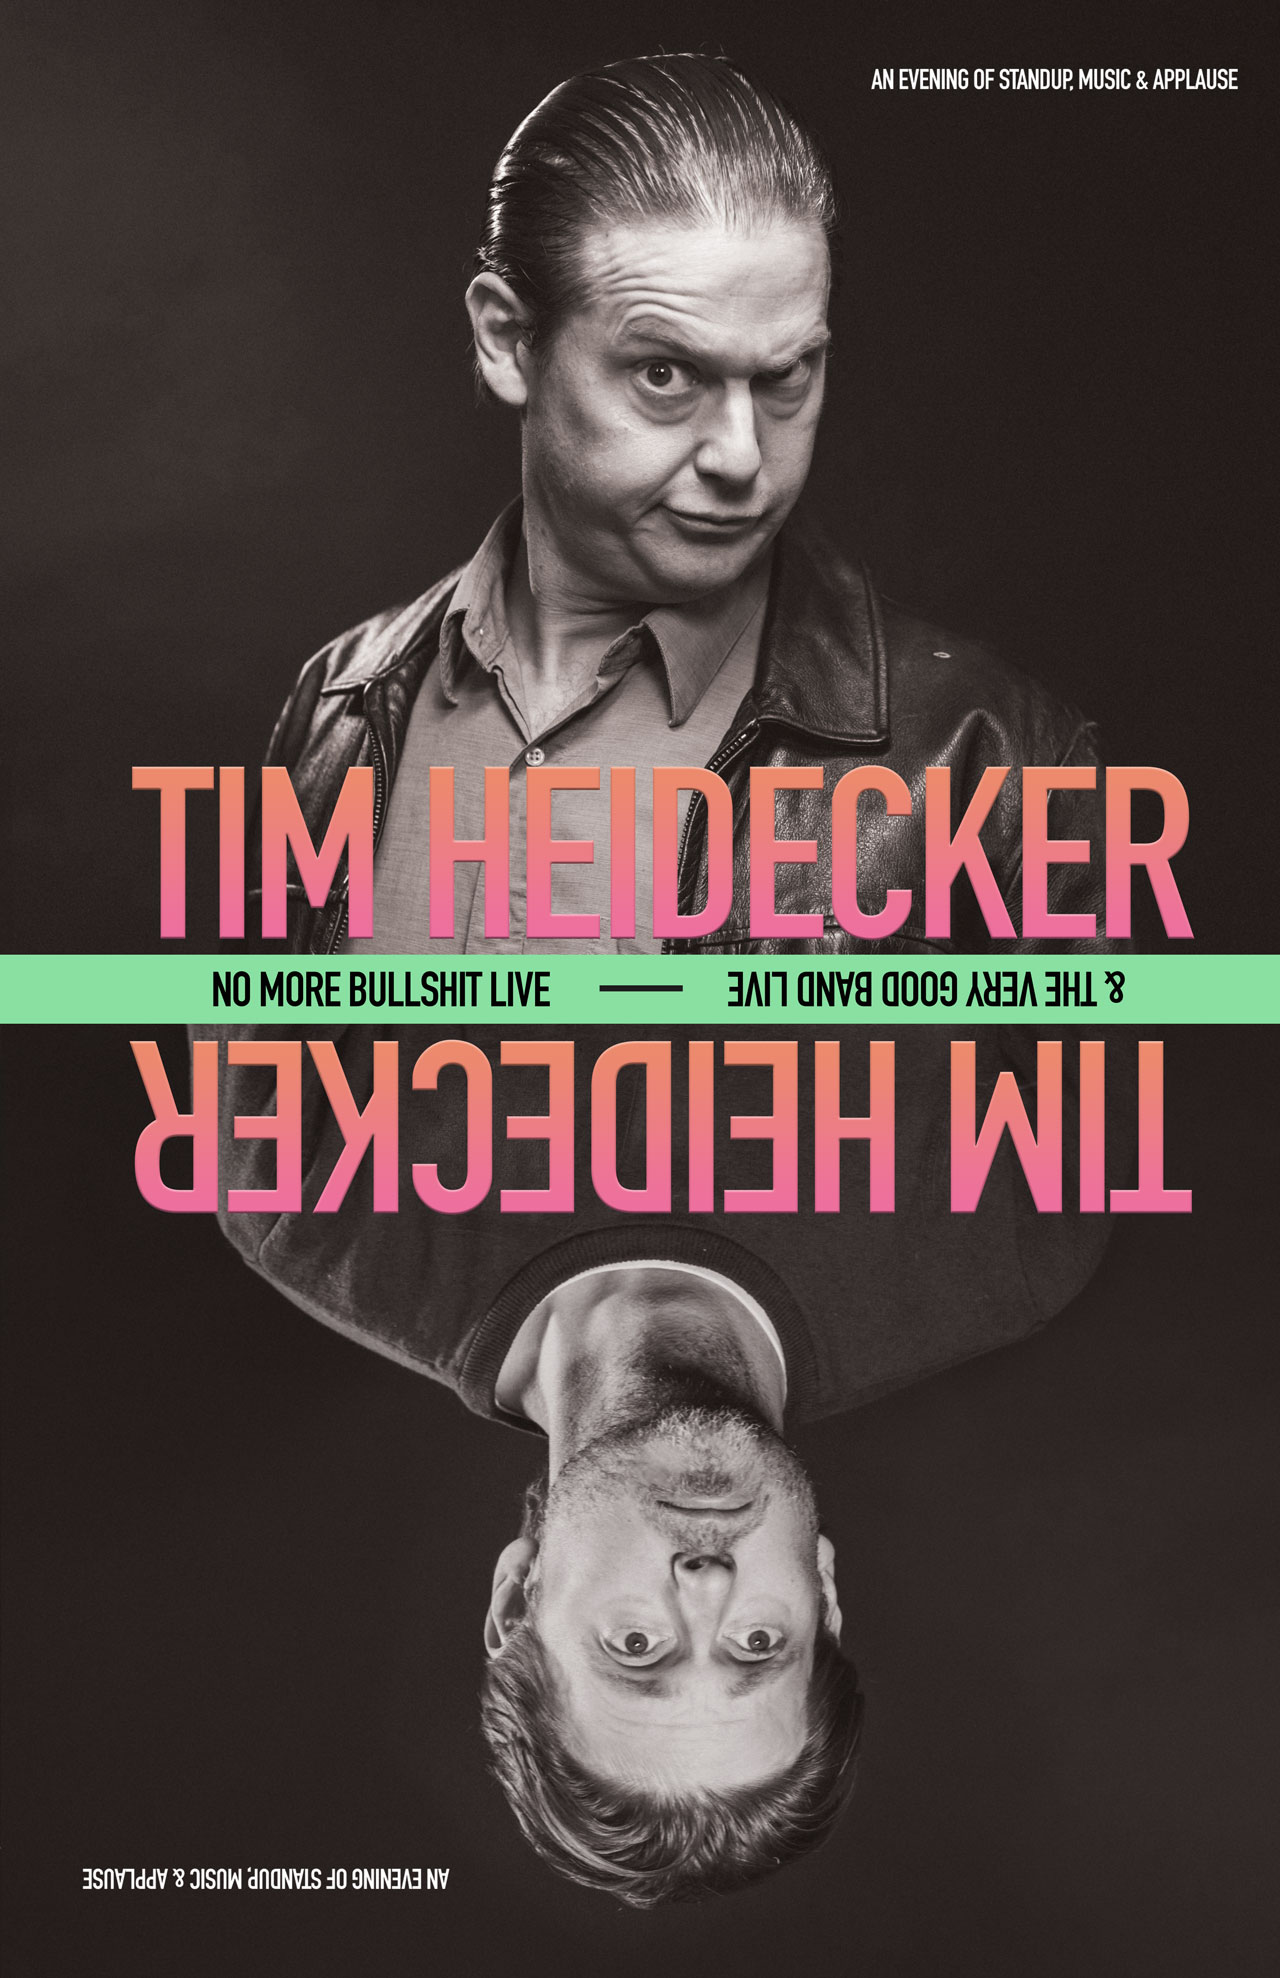 Tim Heidecker tour poster